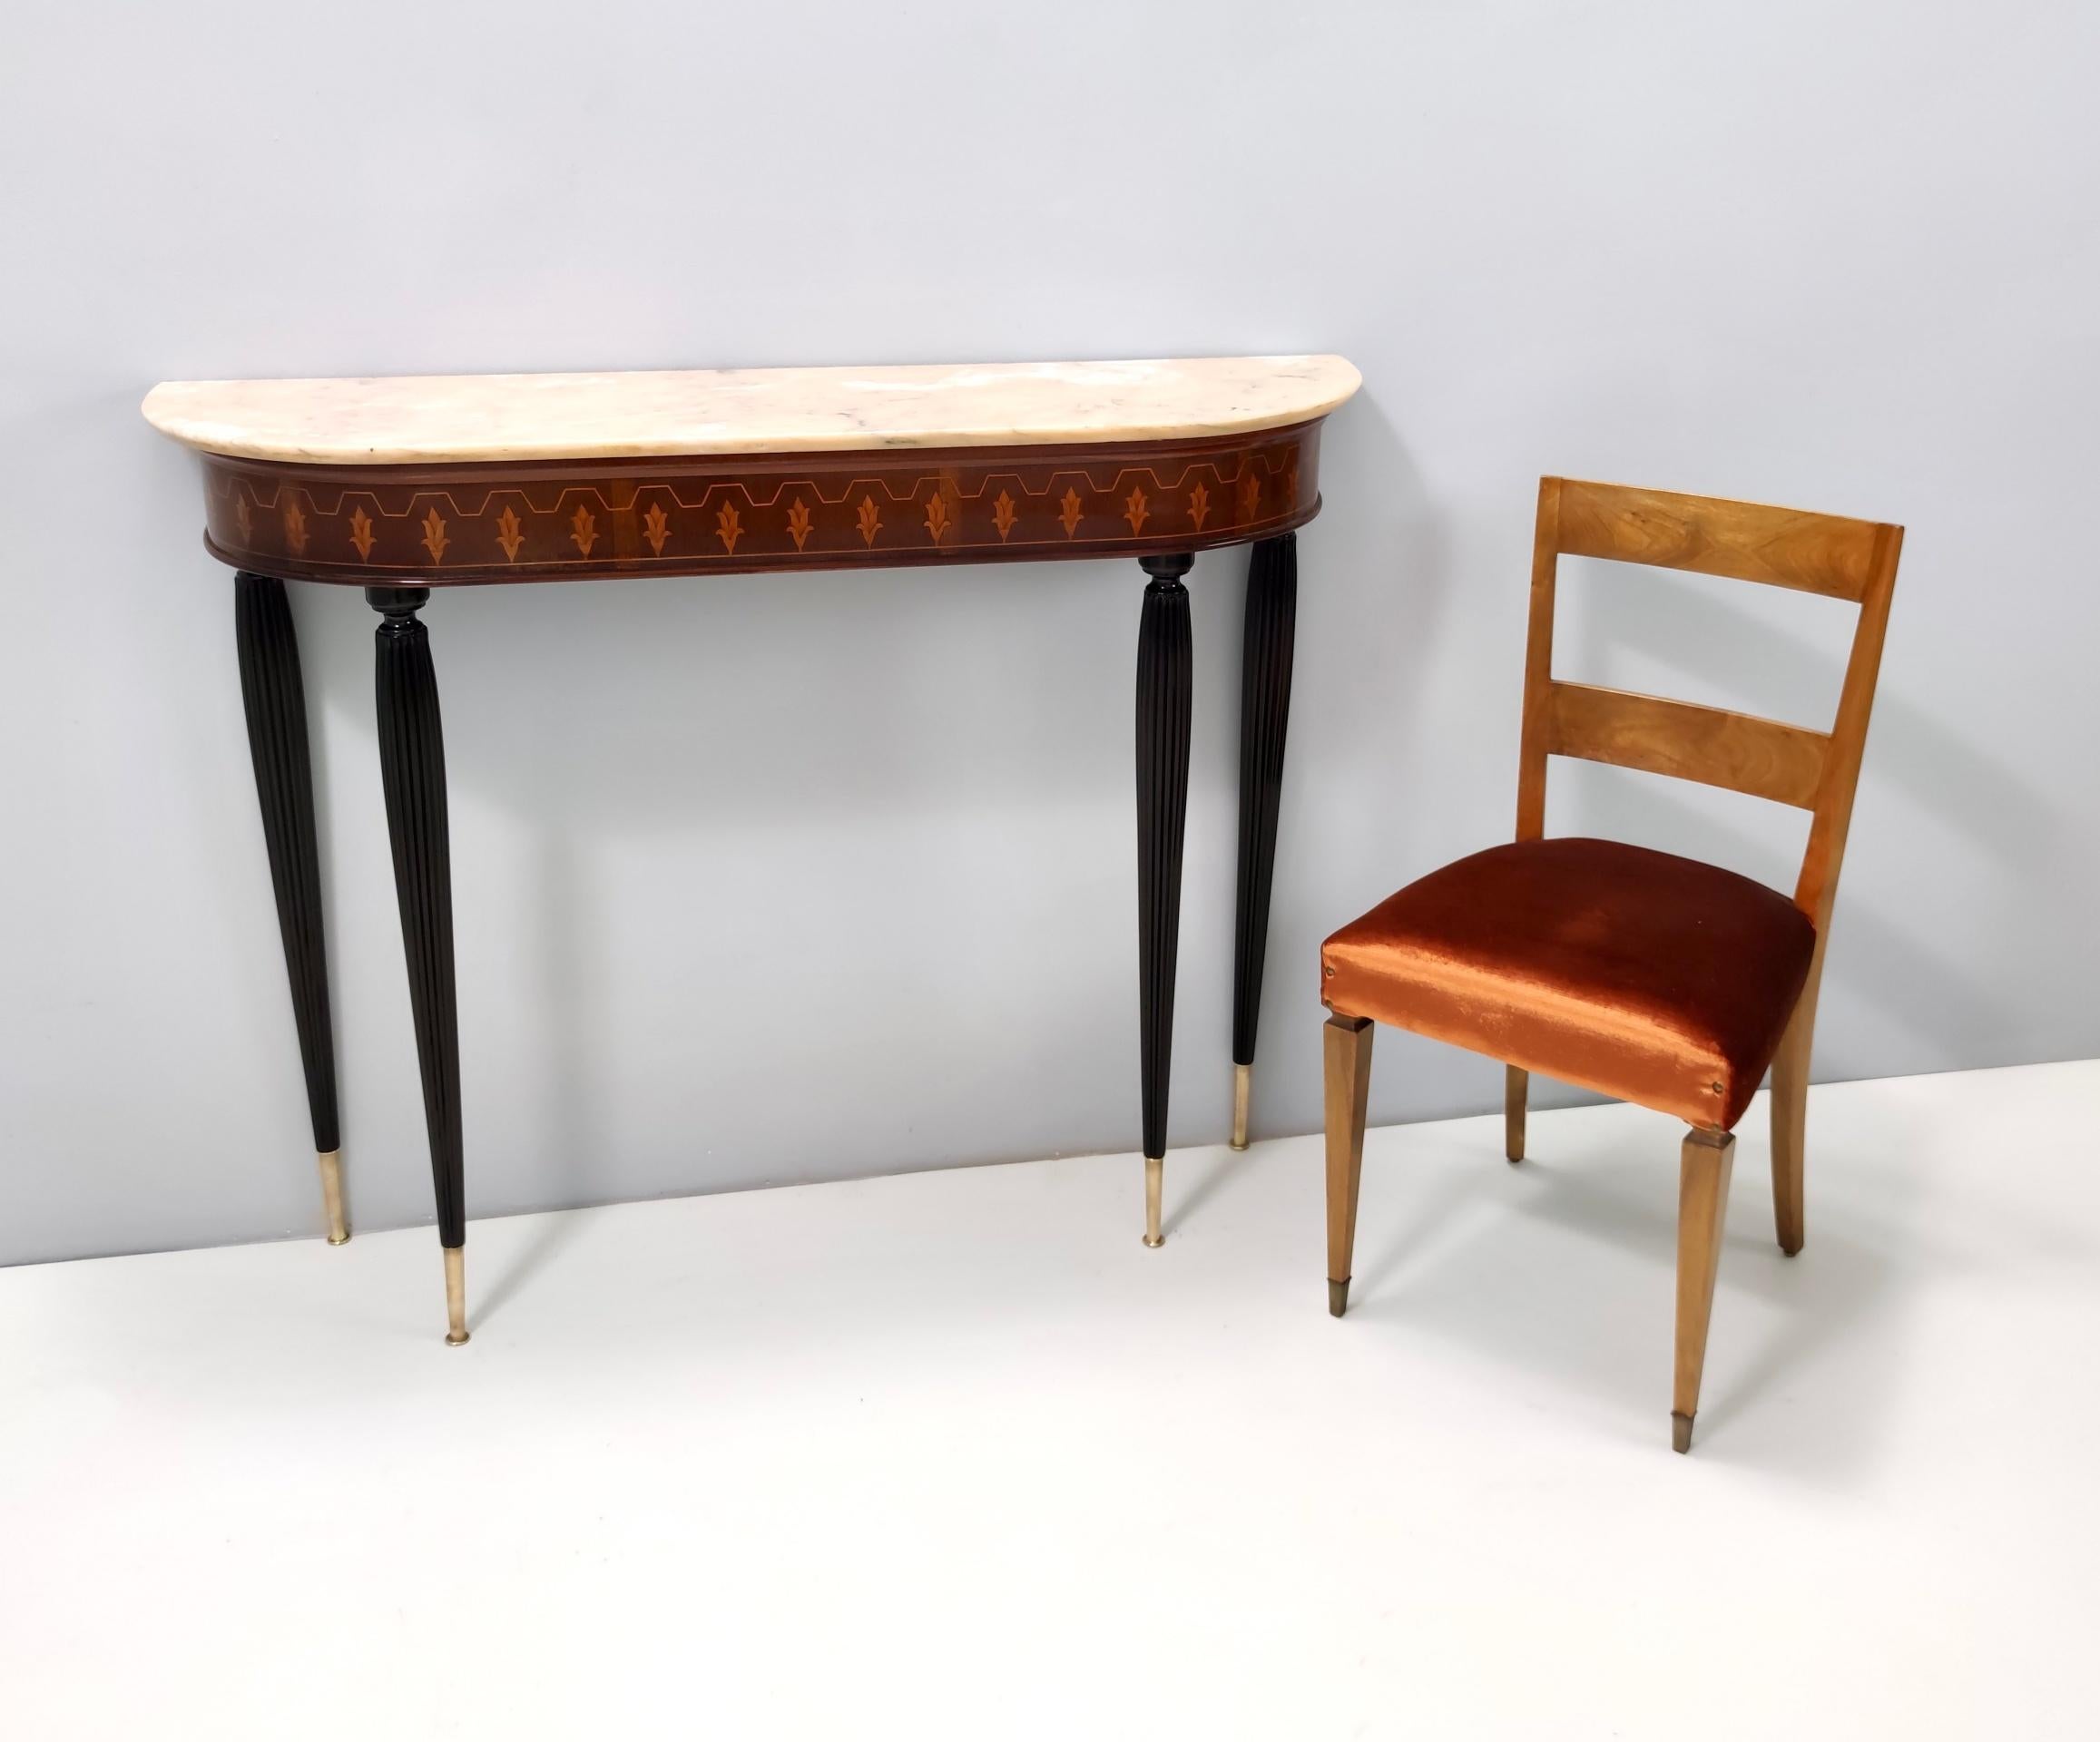 Hergestellt in Italien, 1930er-1940er Jahre.
Die Stühle haben ein Gestell aus Nussbaumholz und eine orangefarbene Stoffbespannung.
Sie sind Vintage, daher können sie leichte Gebrauchsspuren aufweisen, wurden aber perfekt restauriert und mit